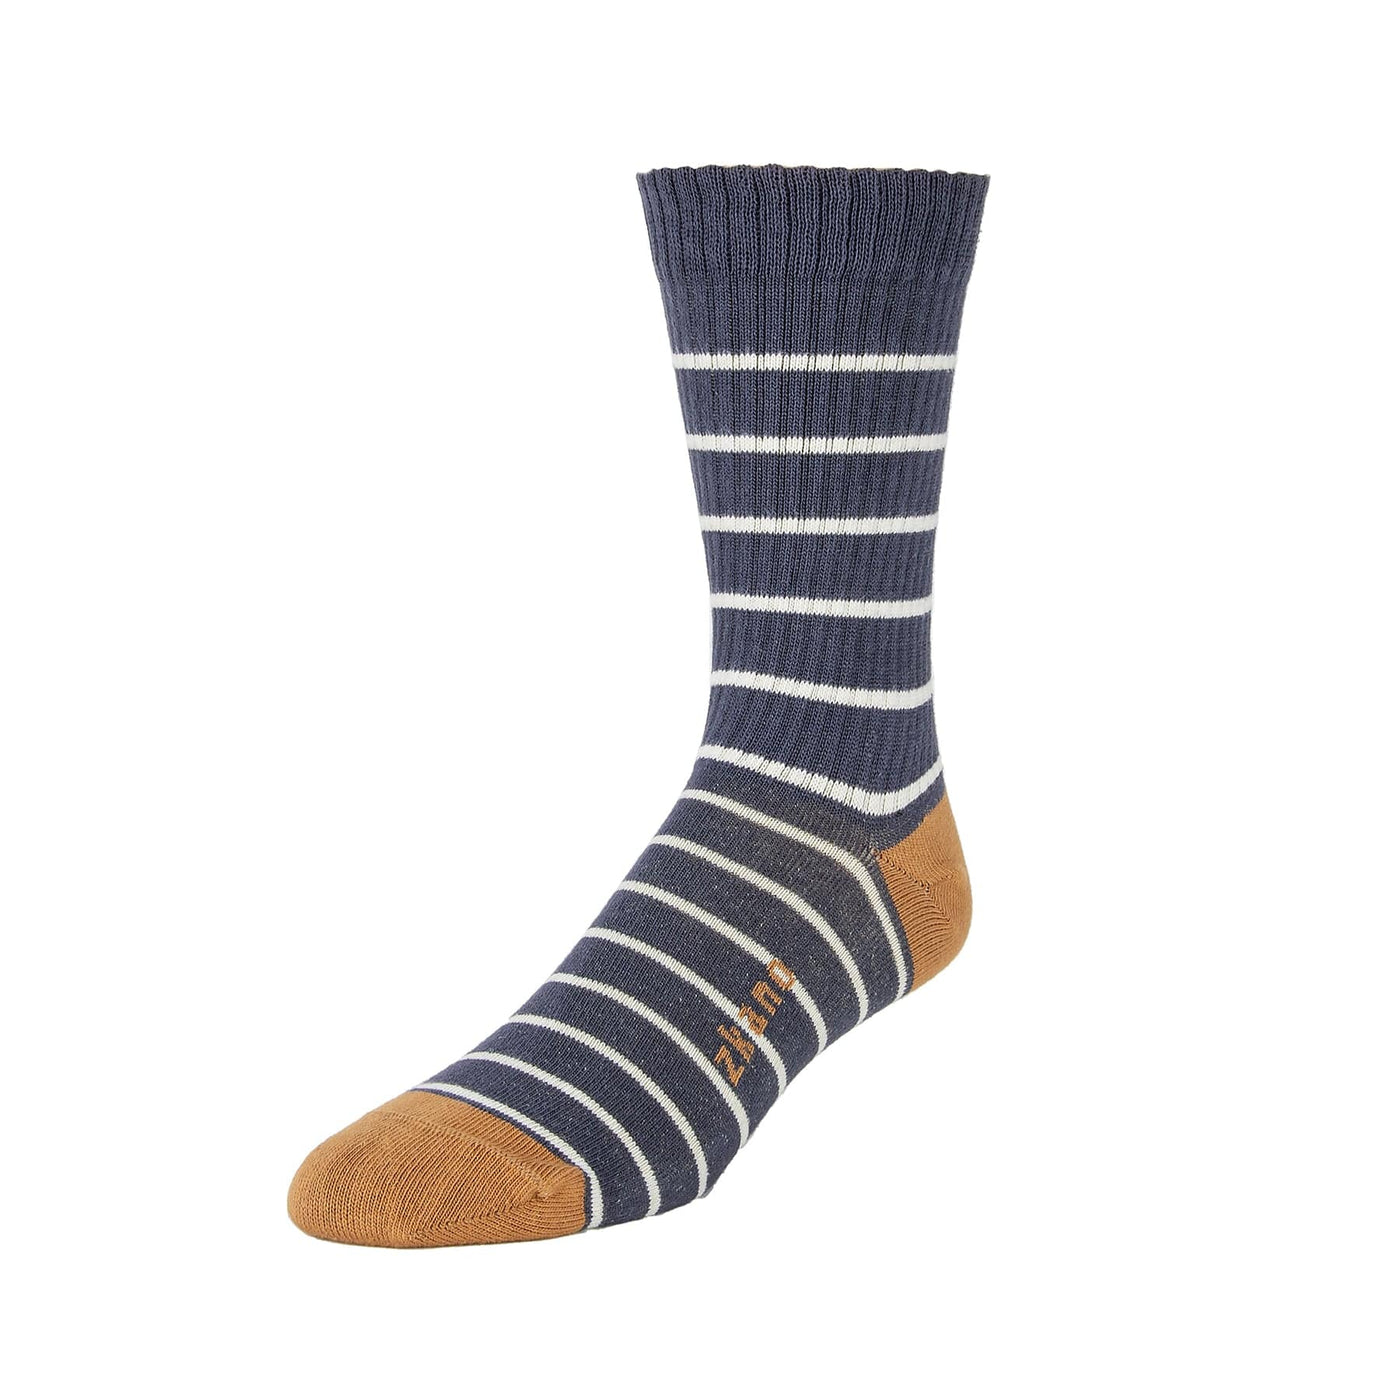 Voyager - Heavy Rib Organic Cotton Crew Socks - Indigo – zkano socks